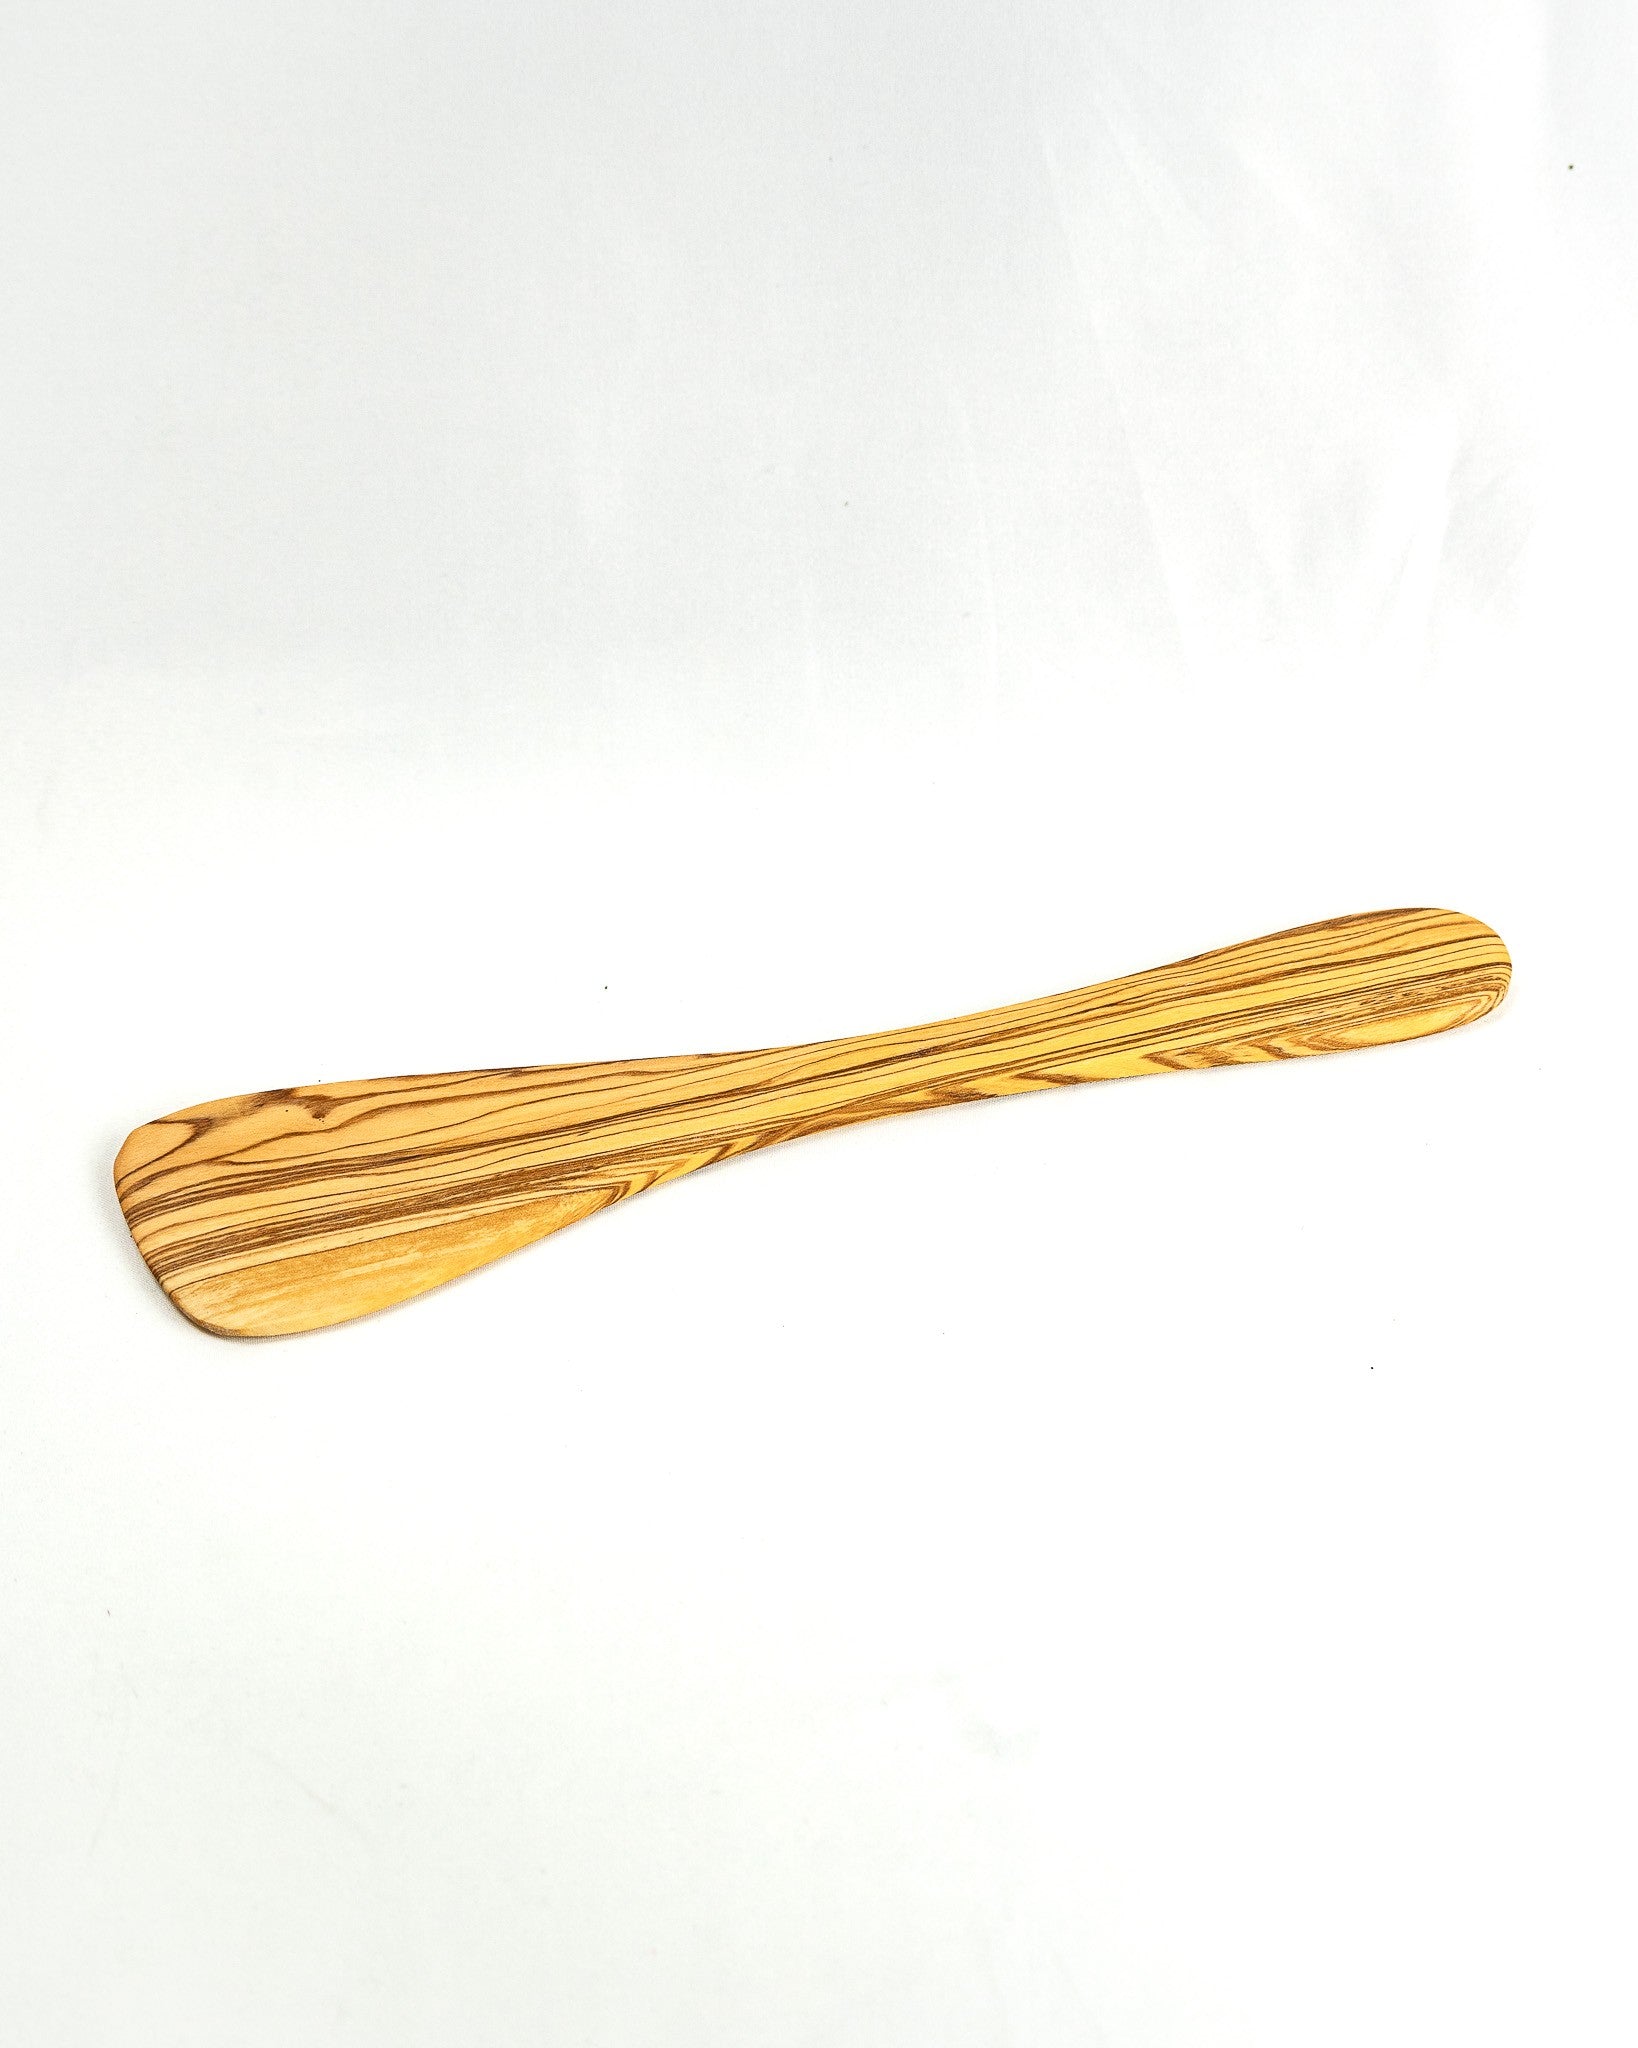 Straight olive wood spatula